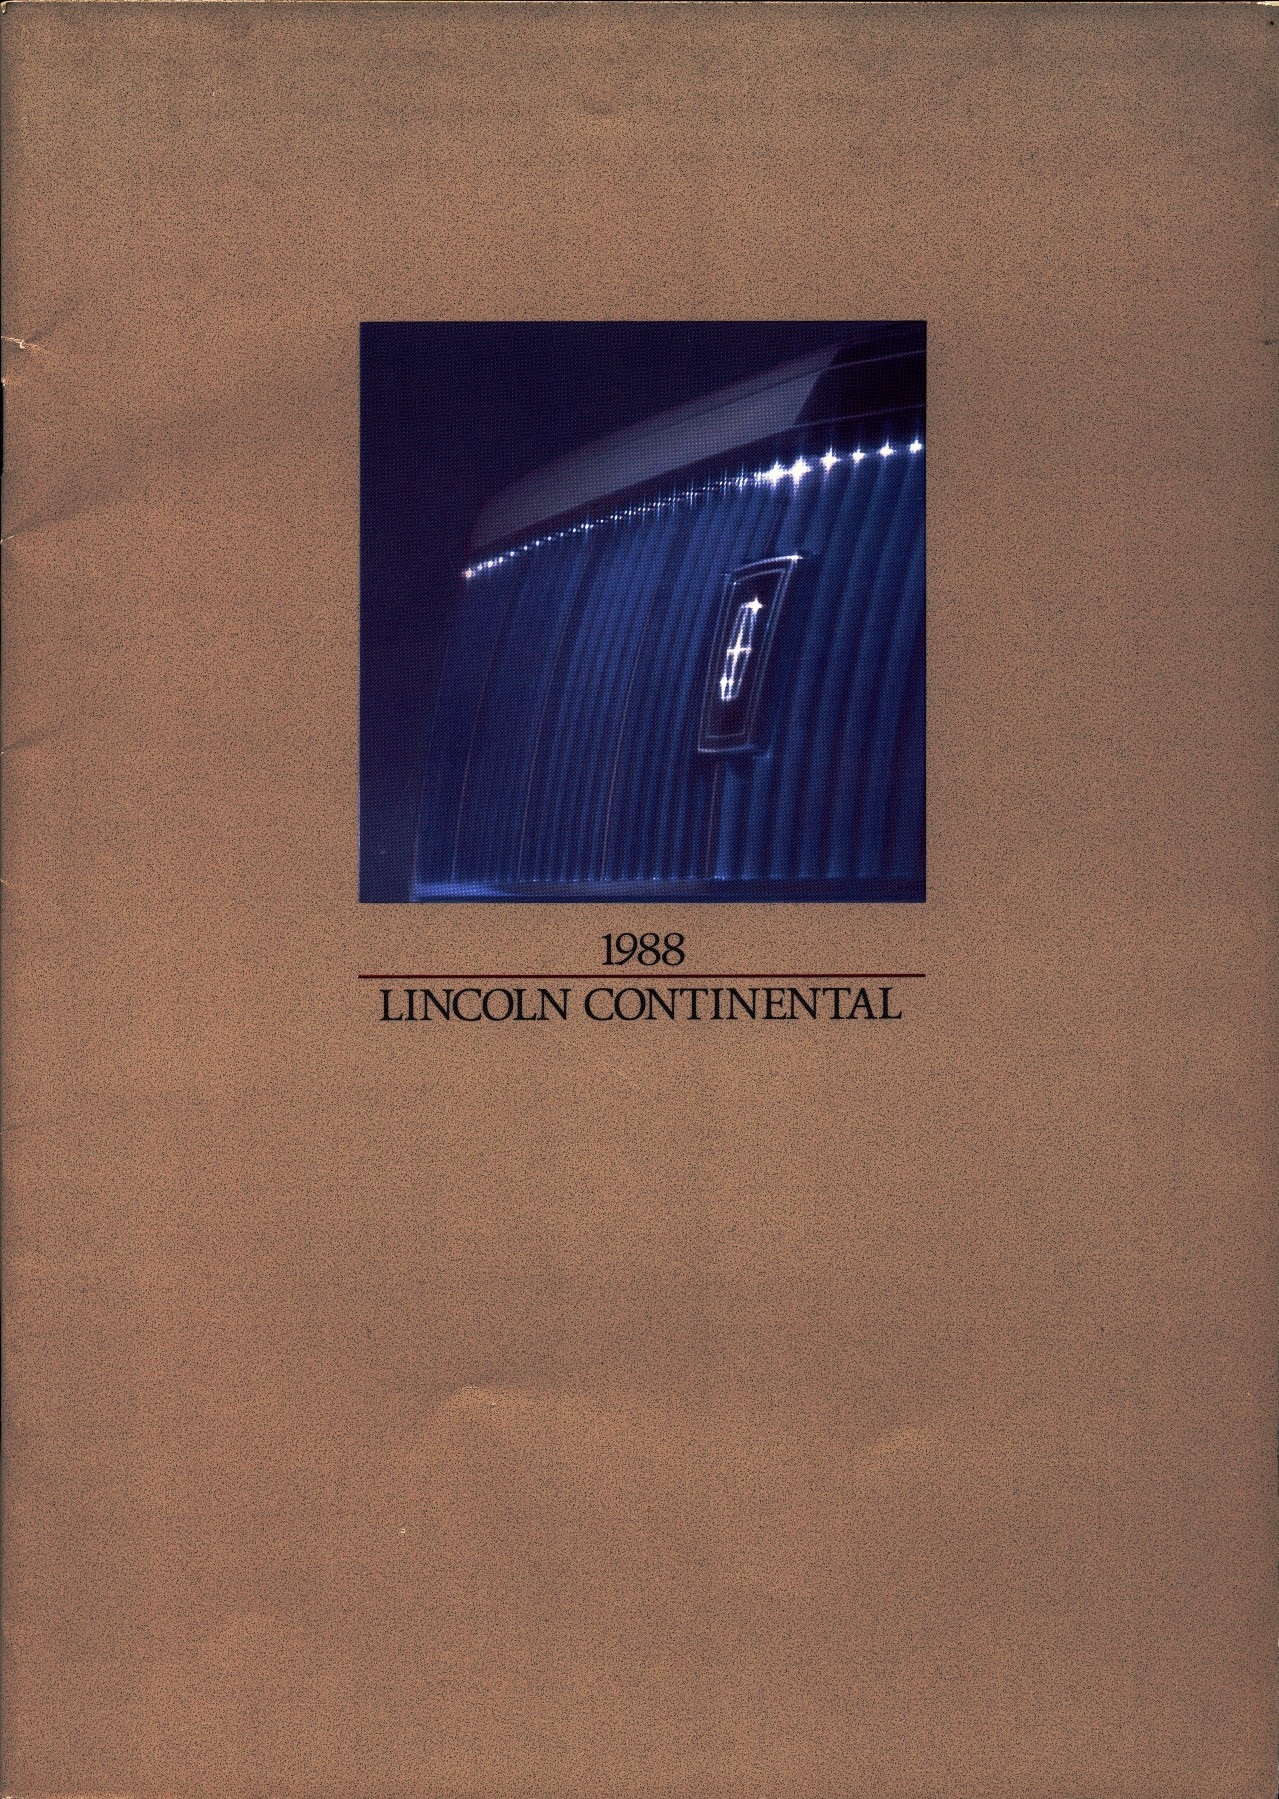 1988 Lincoln Continental Prestige Brochure 01